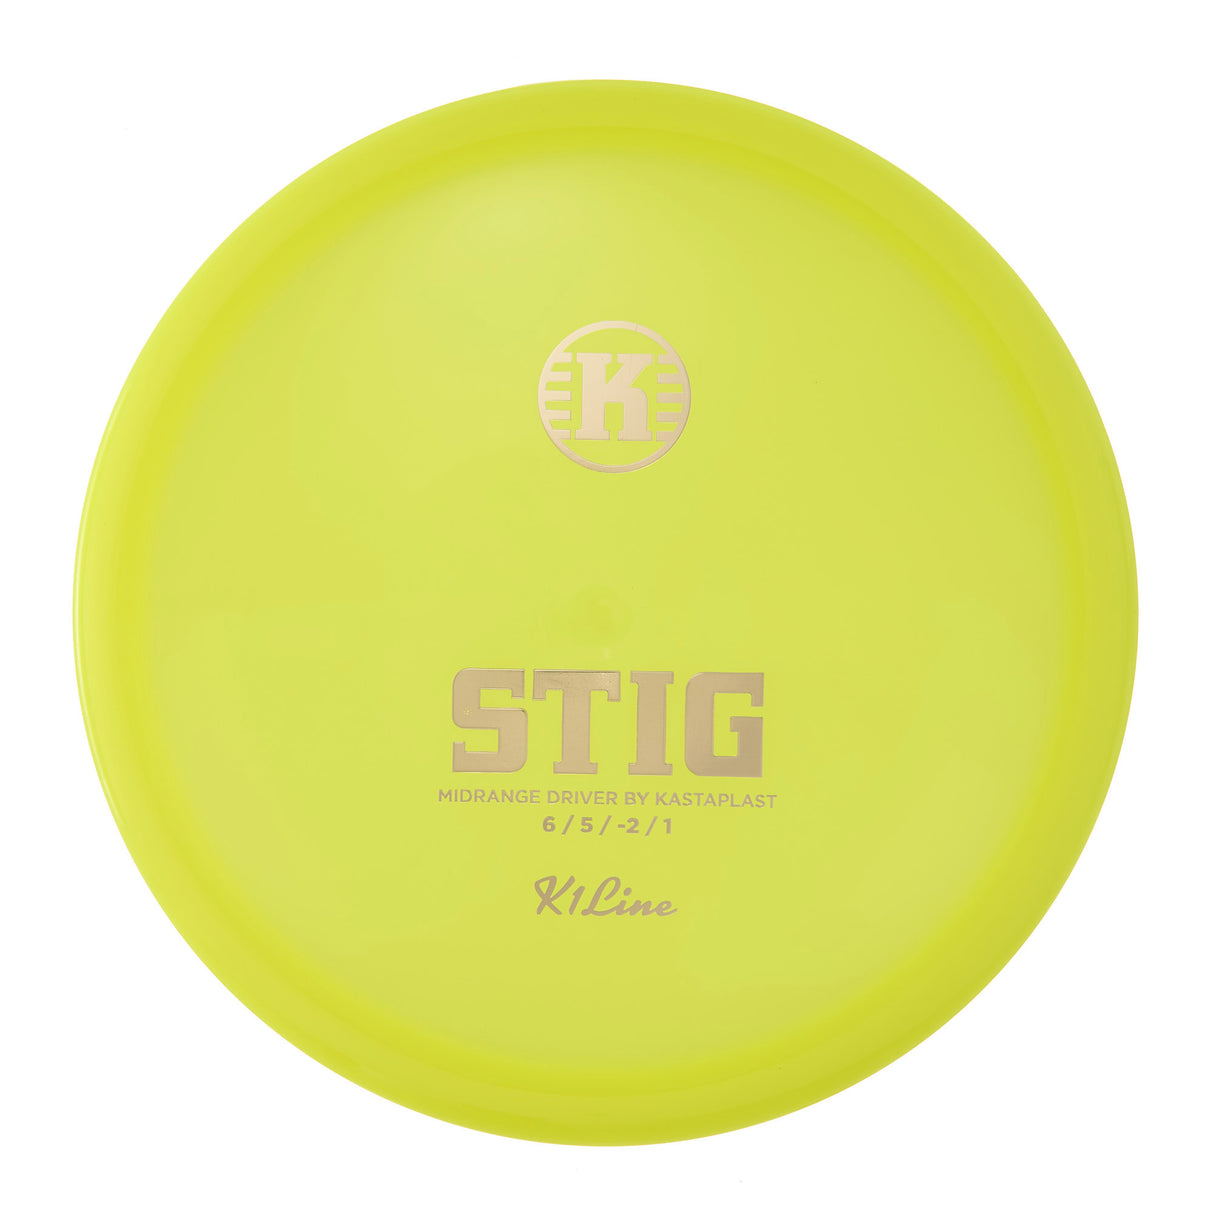 Kastaplast Stig - K1 174g | Style 0018